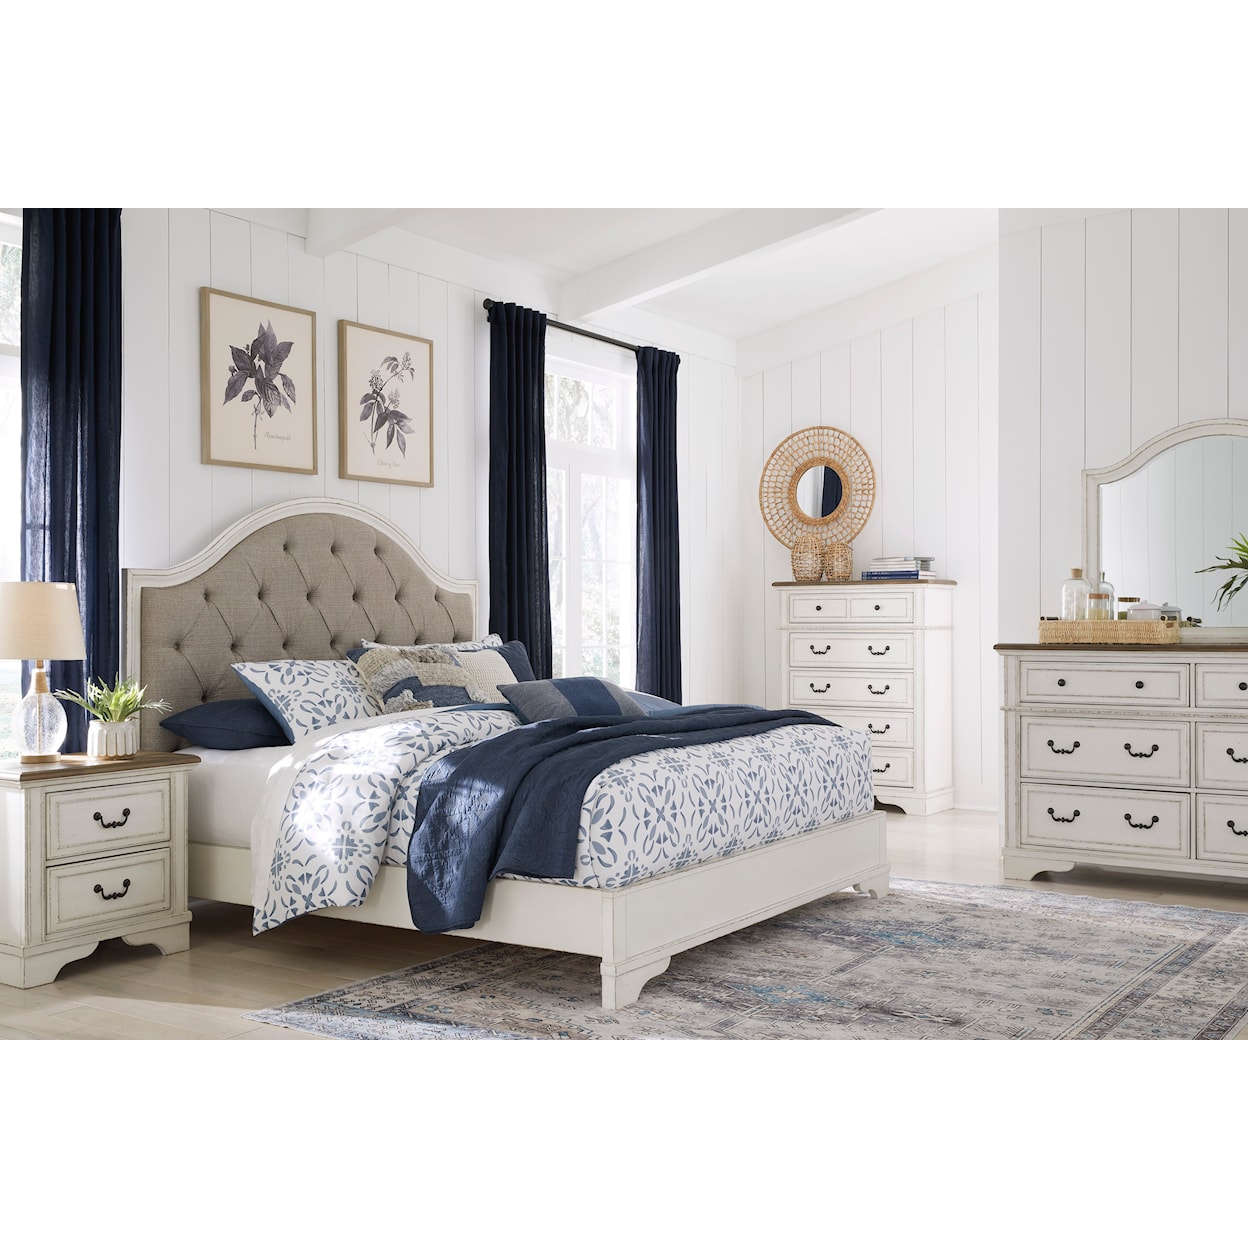 Ashley Furniture Signature Design Brollyn King Bedroom Set